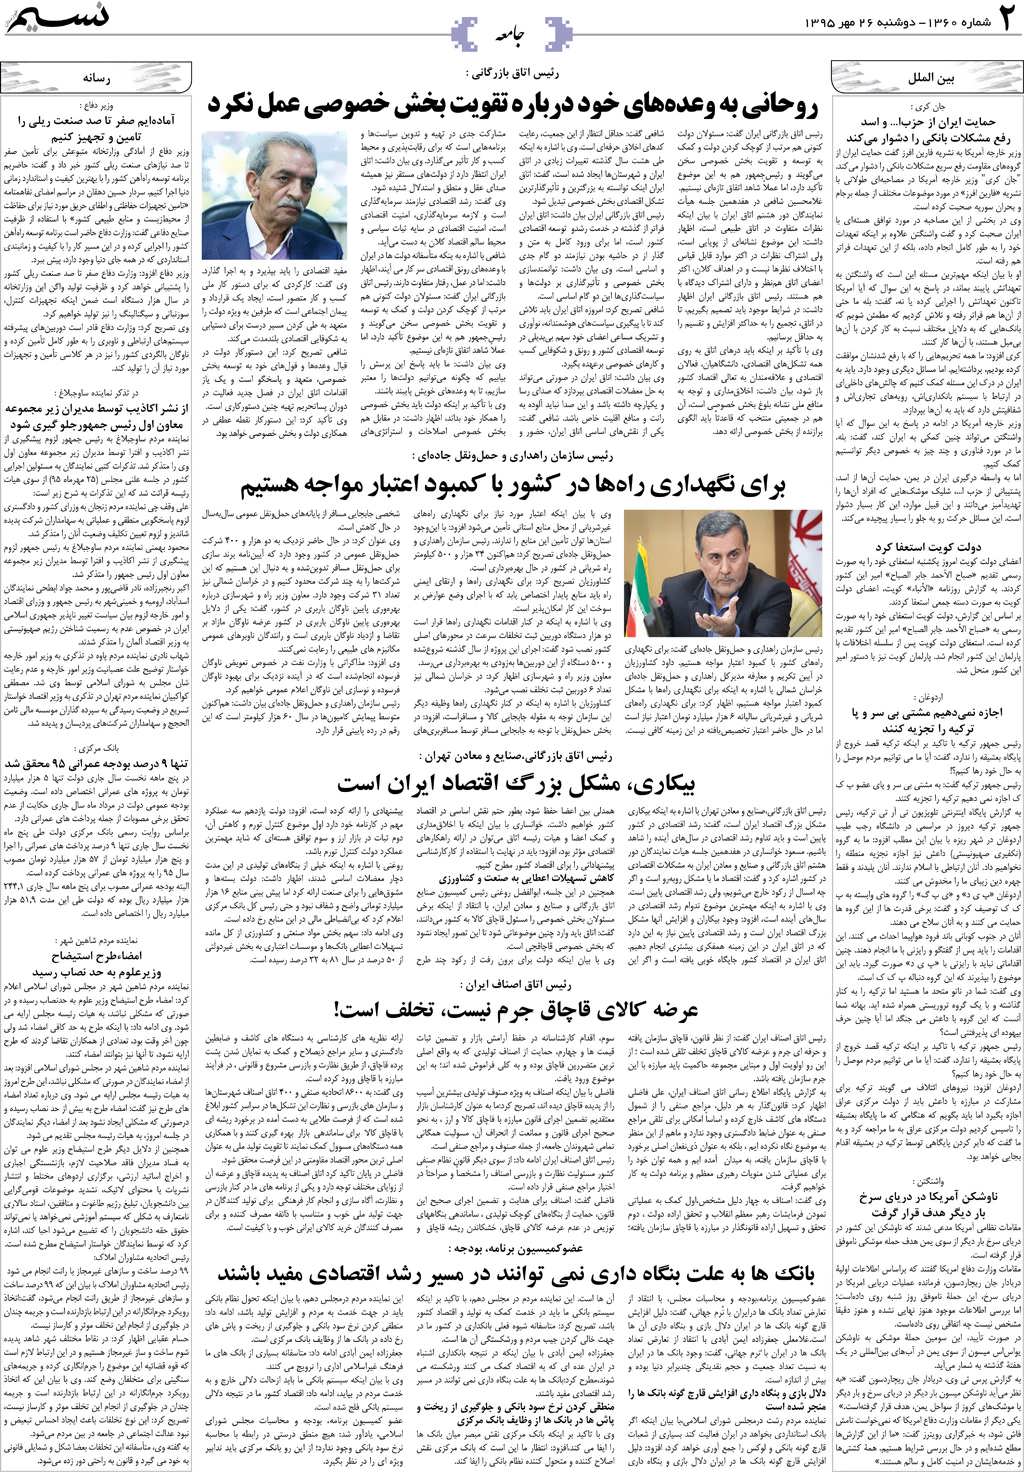 صفحه جامعه روزنامه نسیم شماره 1360